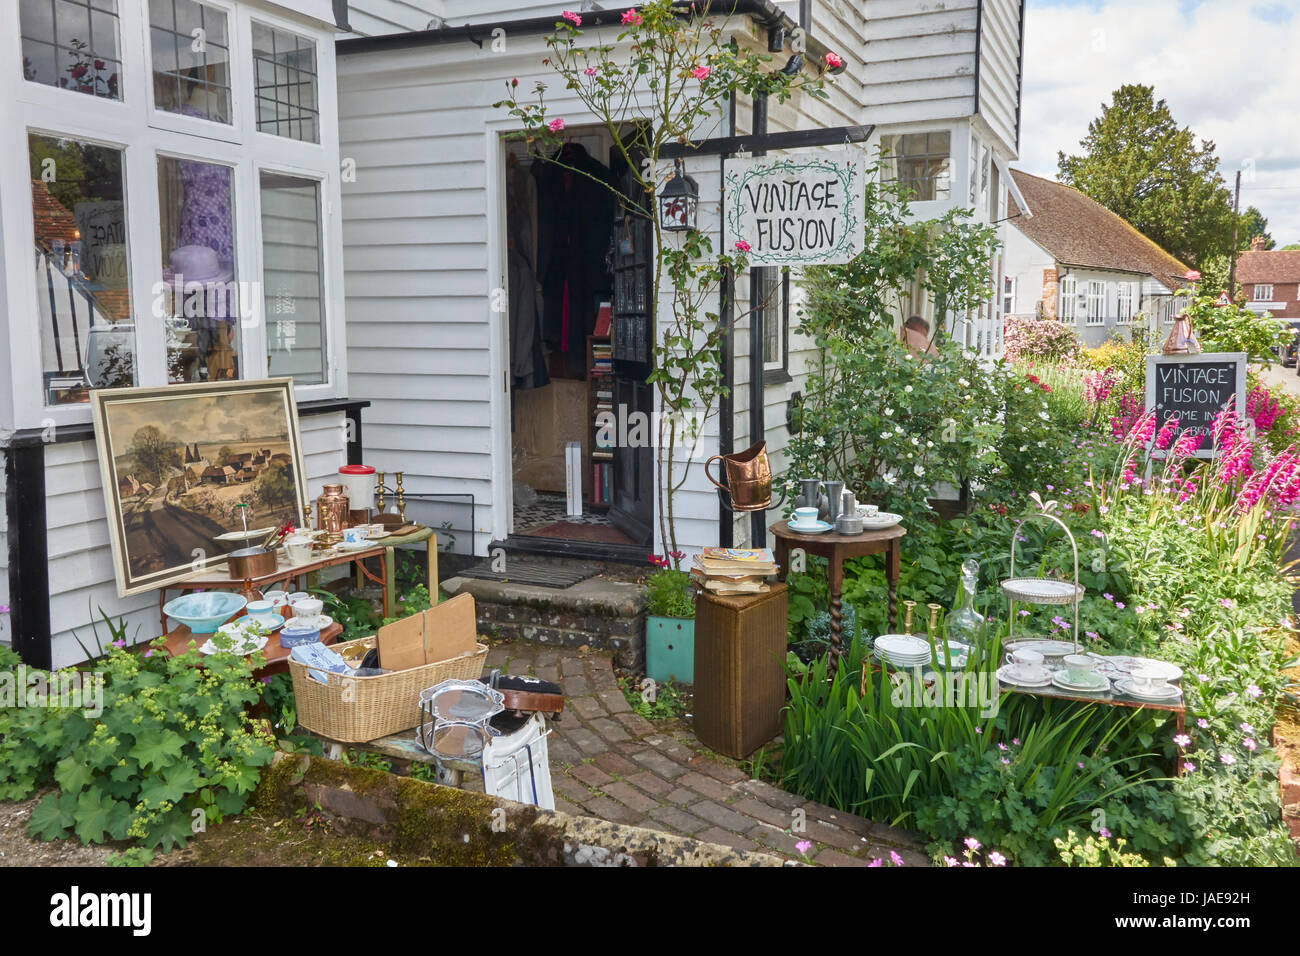 Jolie vintage antique shop dans le pittoresque village de Wealden Kentish Smarden, Kent, Angleterre, Royaume-Uni, Grande Bretagne, FR Banque D'Images